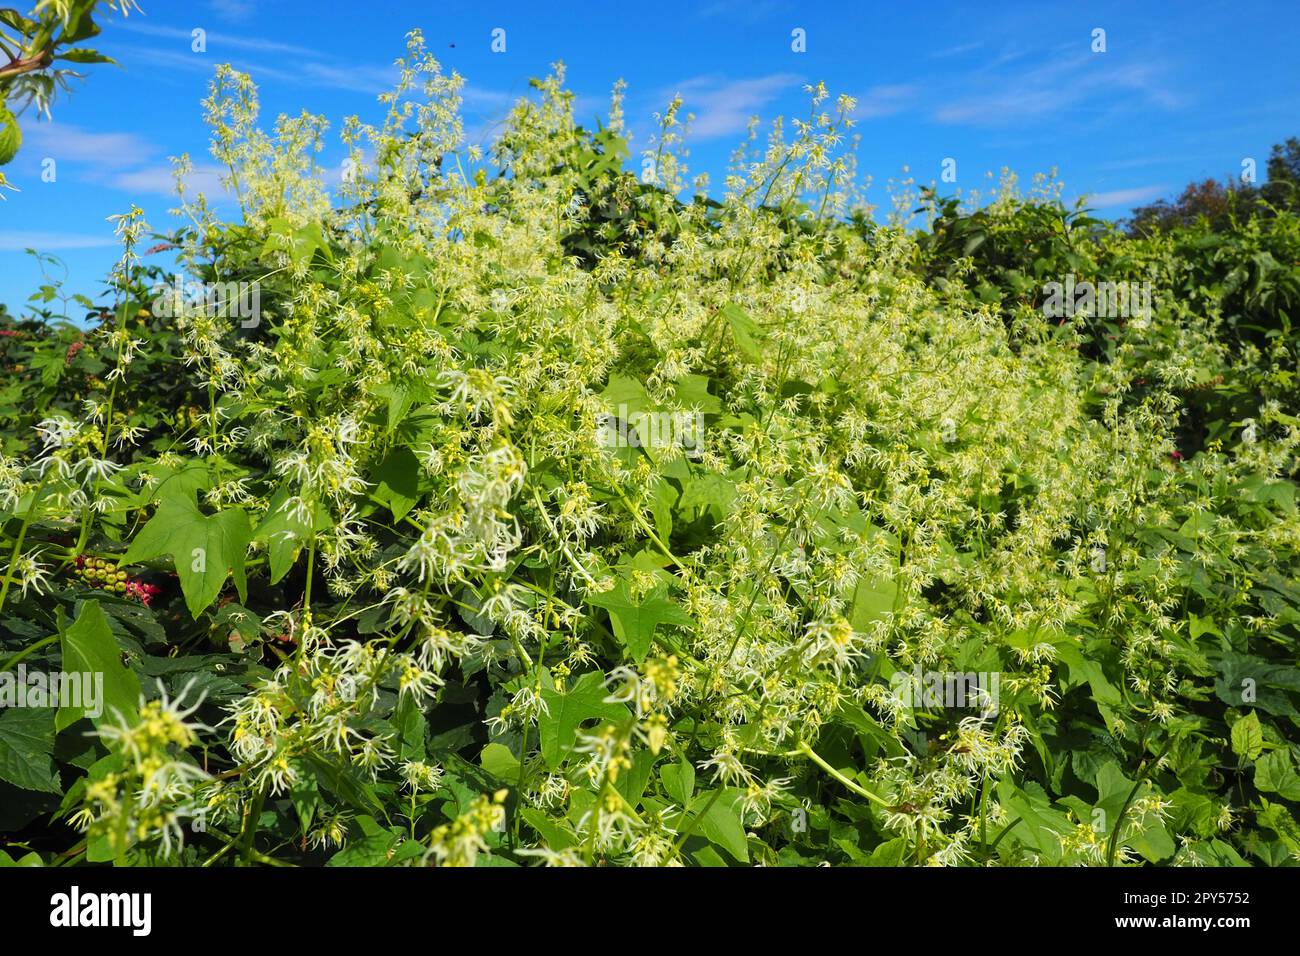 Echinocystis, Echinocystis, est un genre monotypique de plantes herbacées annuelles de la famille des Cucurbitaceae. Echinocystis lobata, ou Echinocystis lobata lobaté. Liana aux fleurs blanc-jaune. Banque D'Images